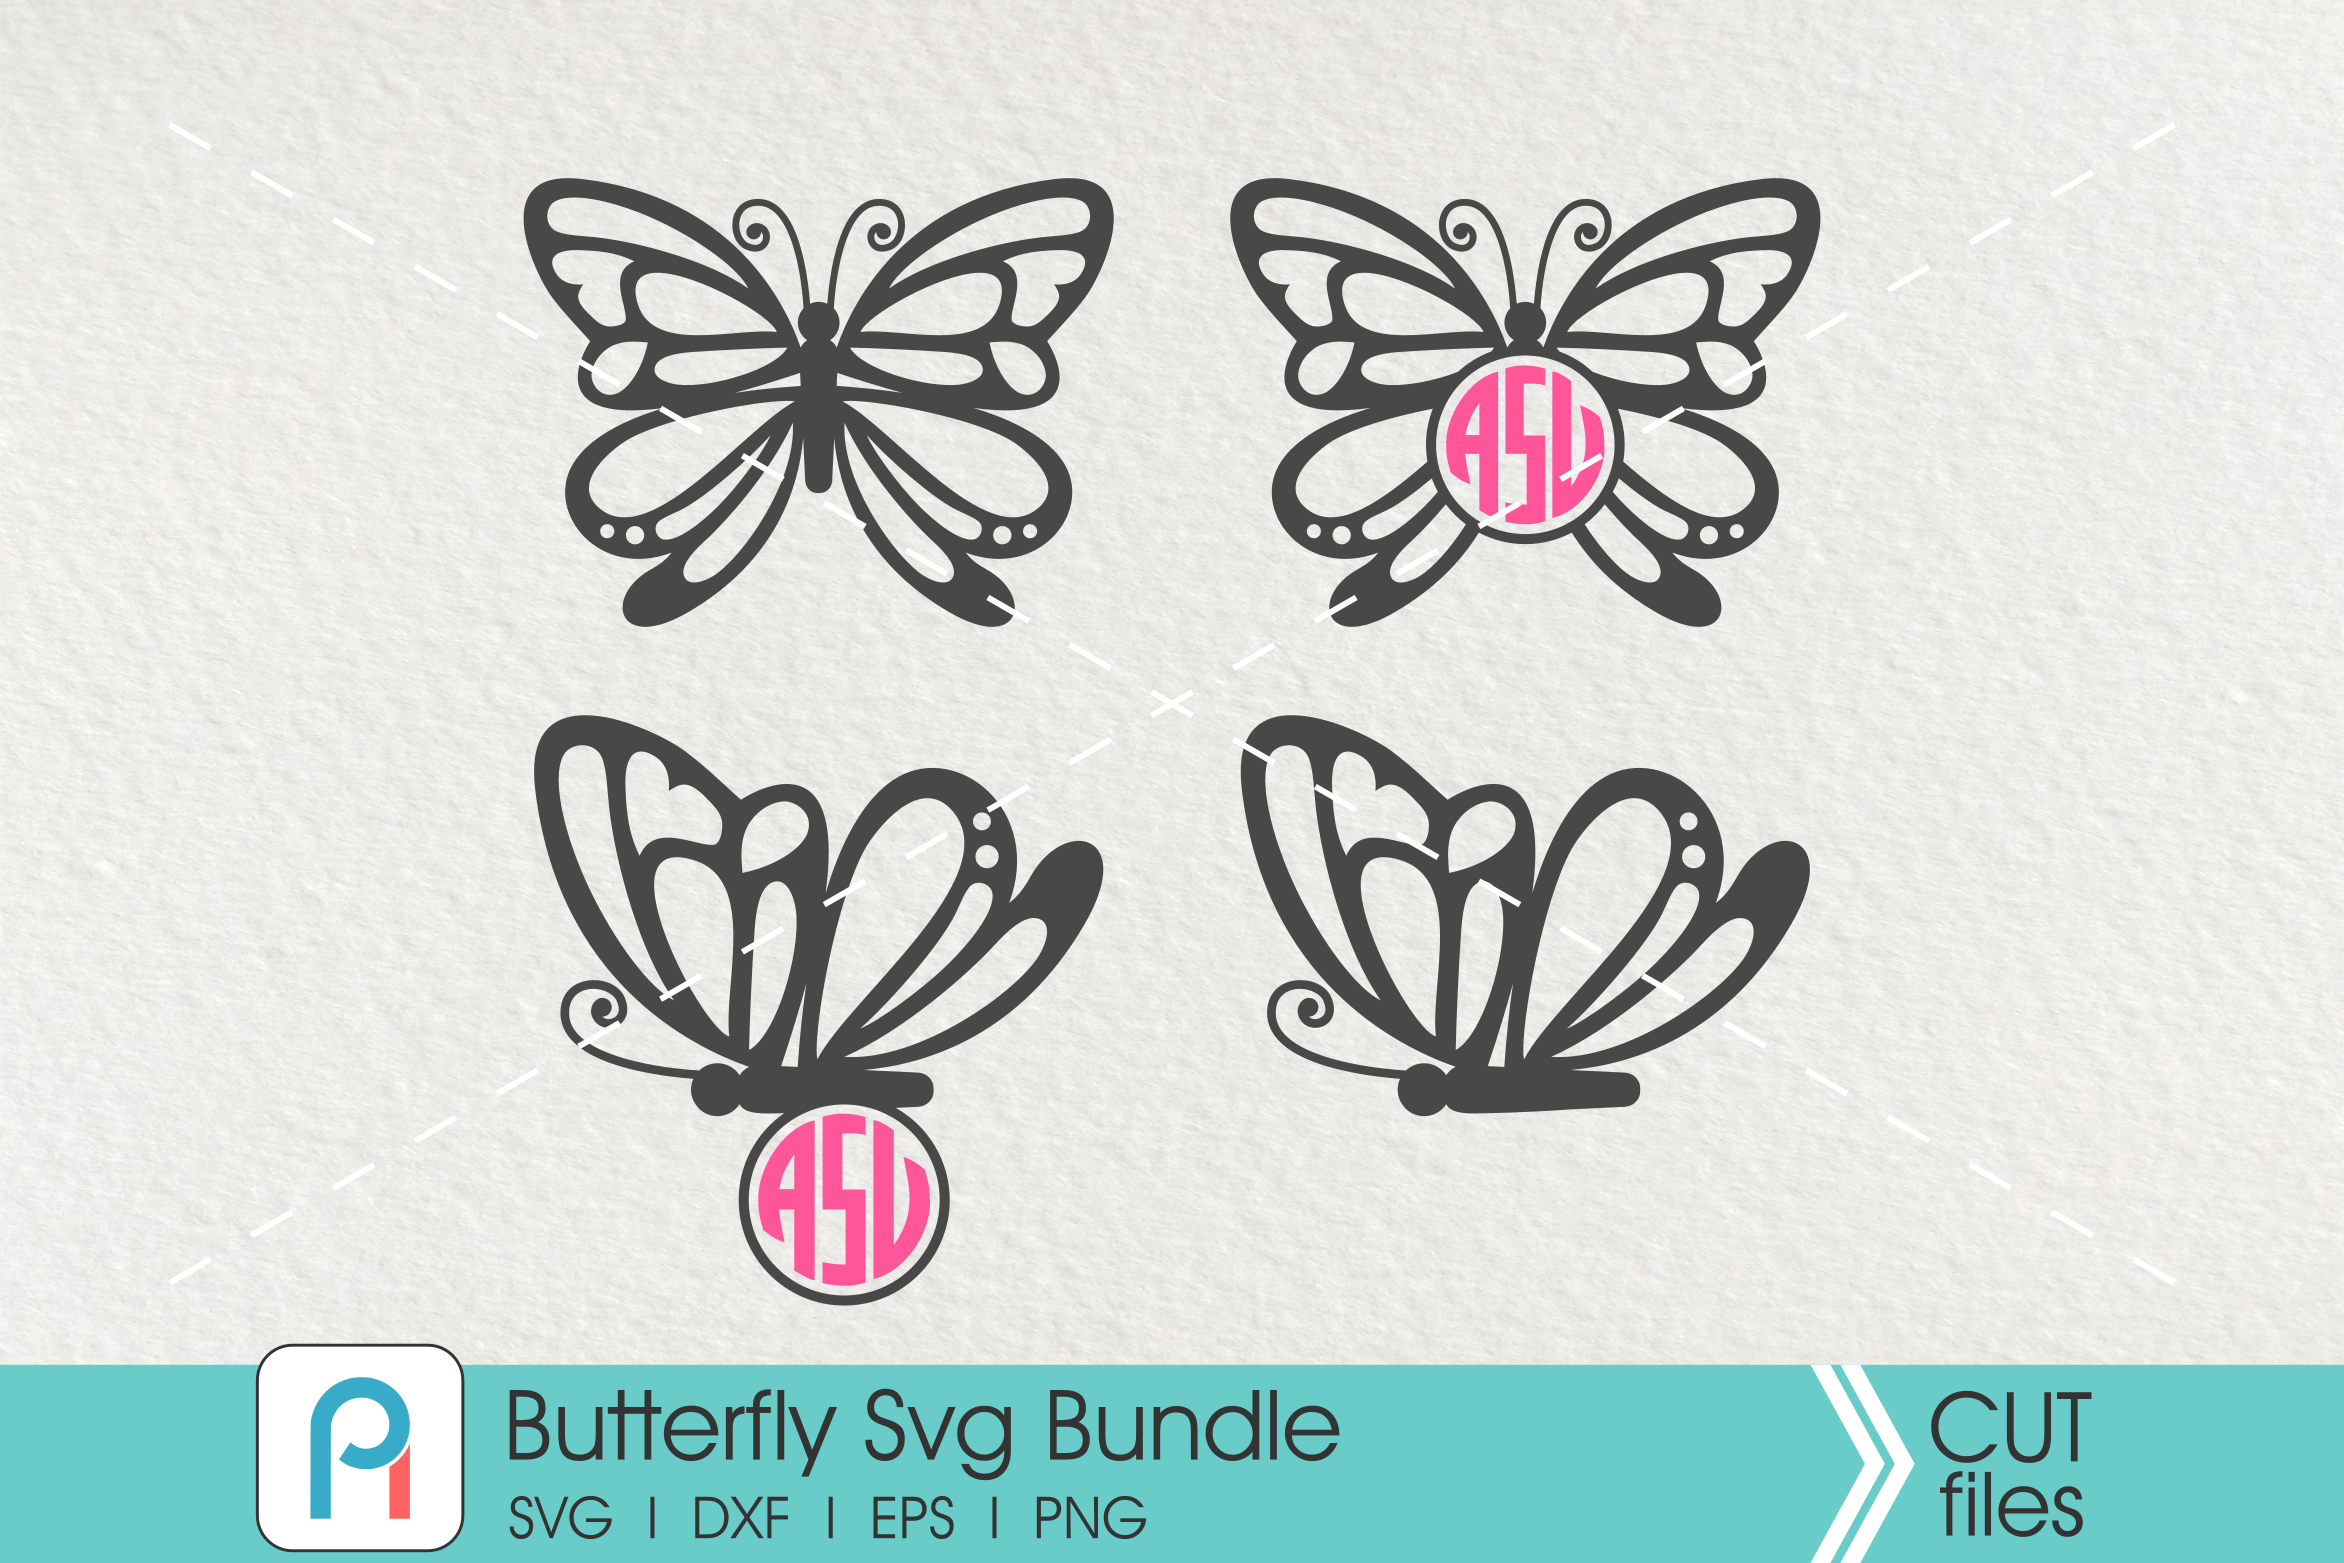 Butterfly Svg, Butterfly Monogram Svg, Butterfly Clip Art